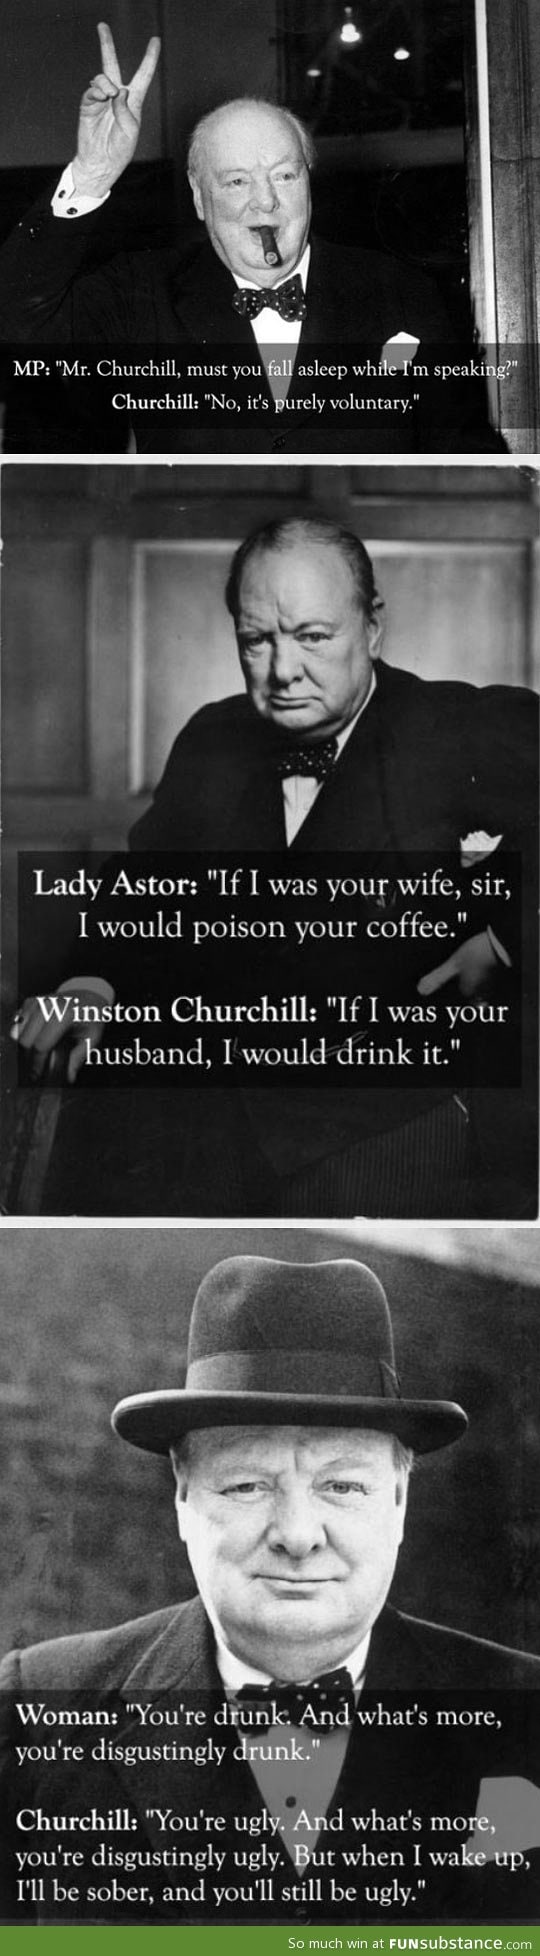 Churchill was a boss